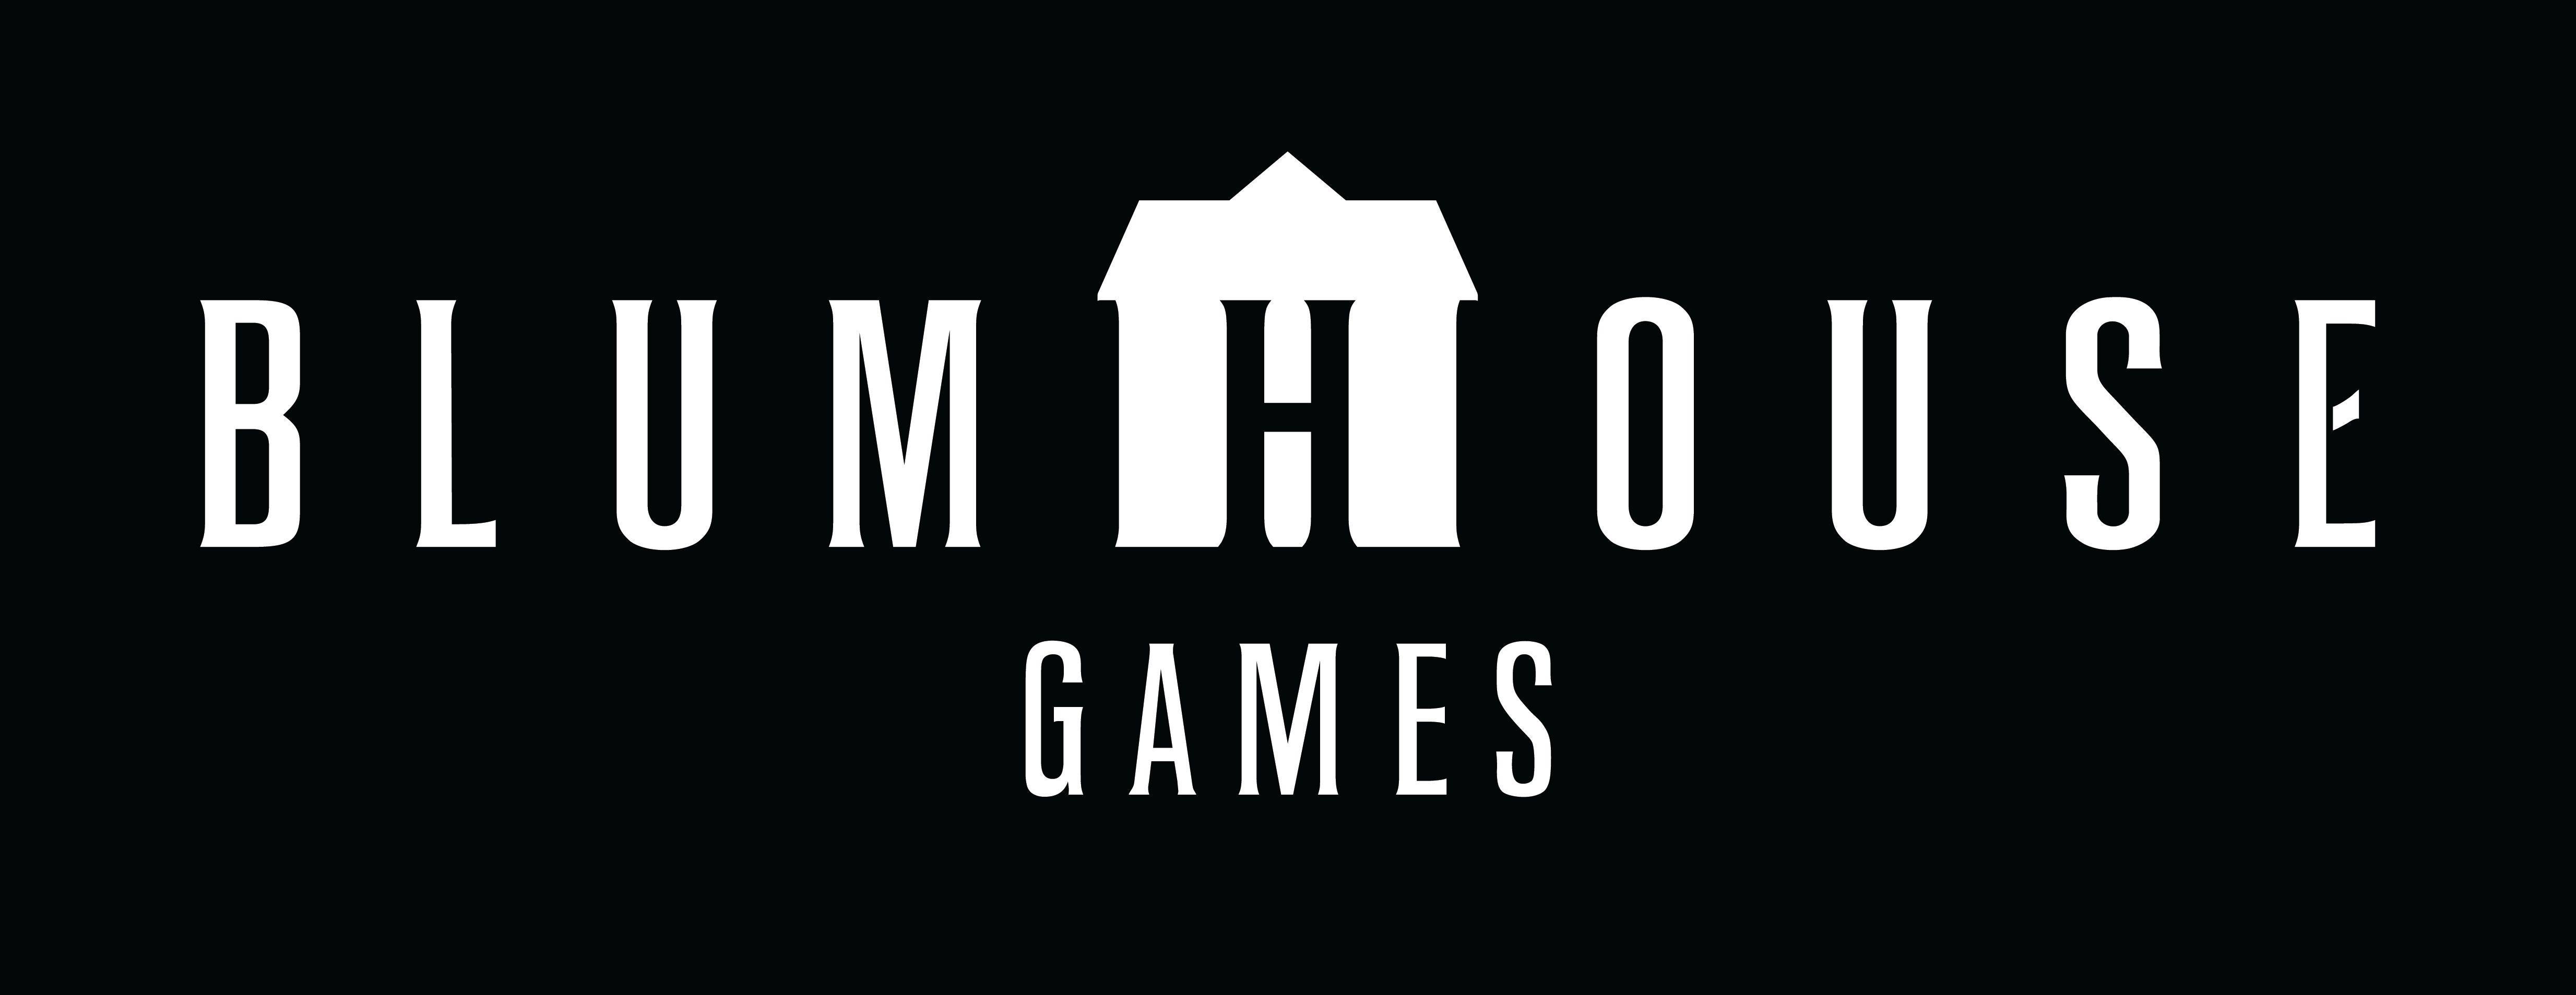 Blumhouse Games раскрывает игры, находящиеся в разработке